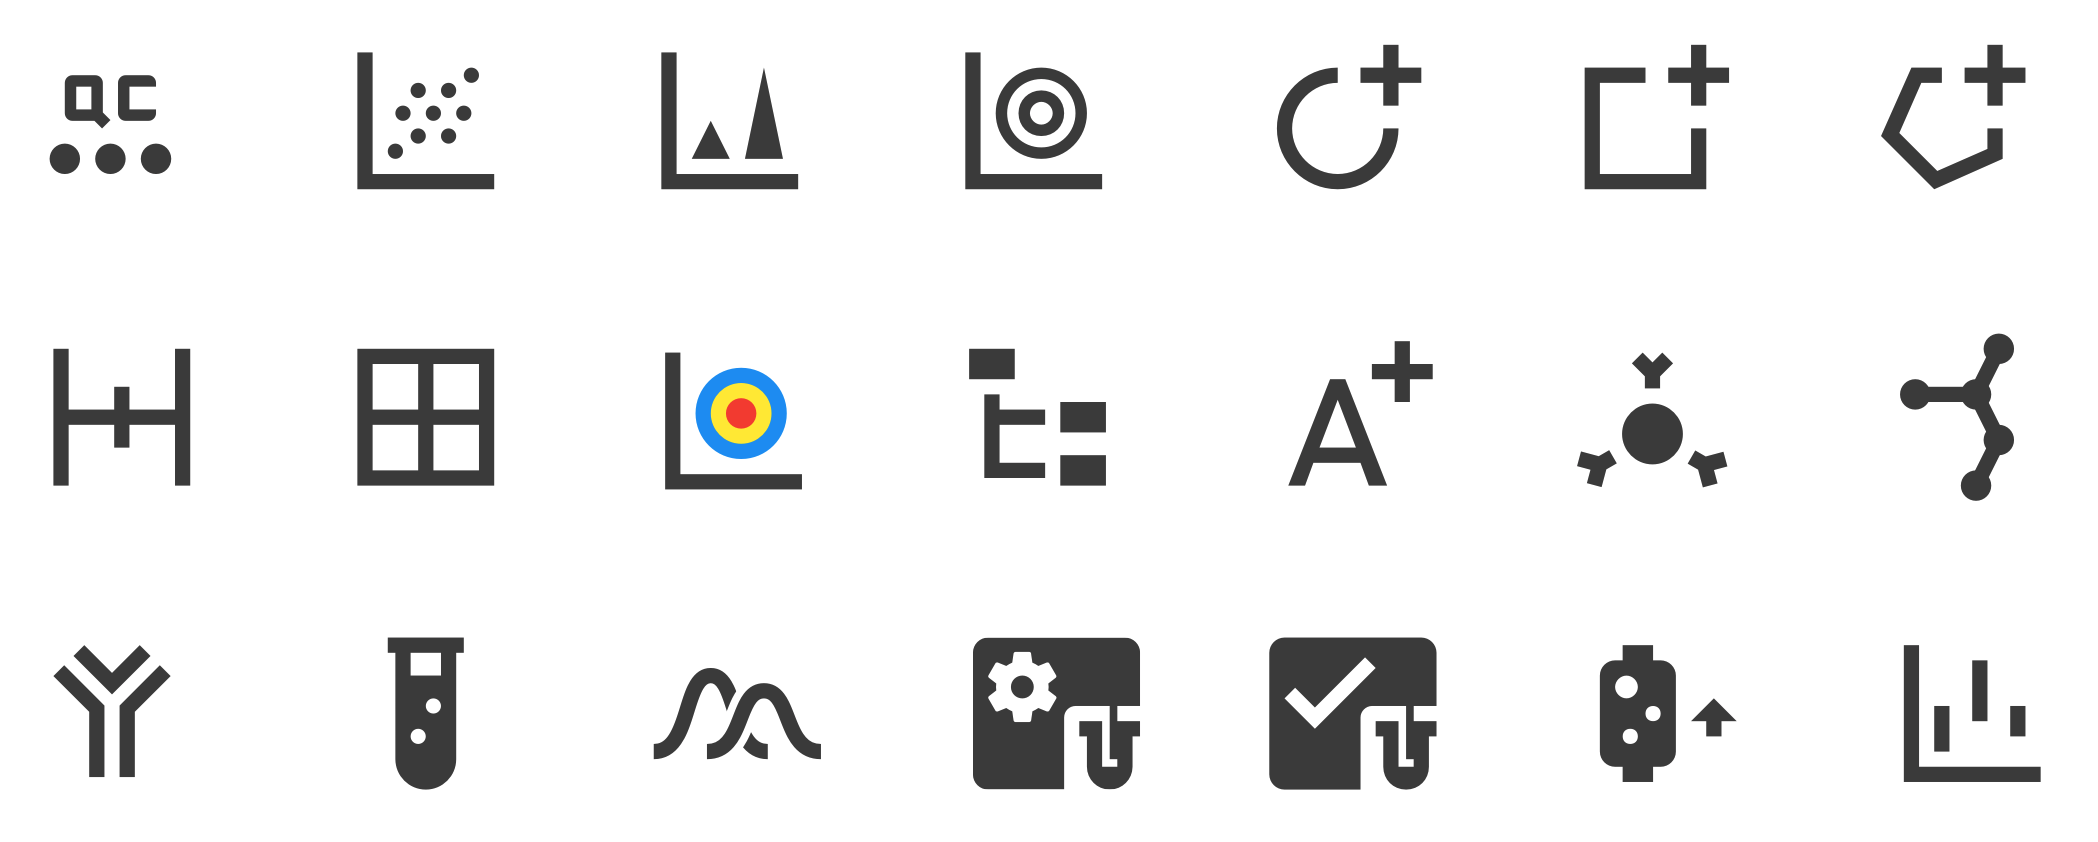 Custom Material Design Icons